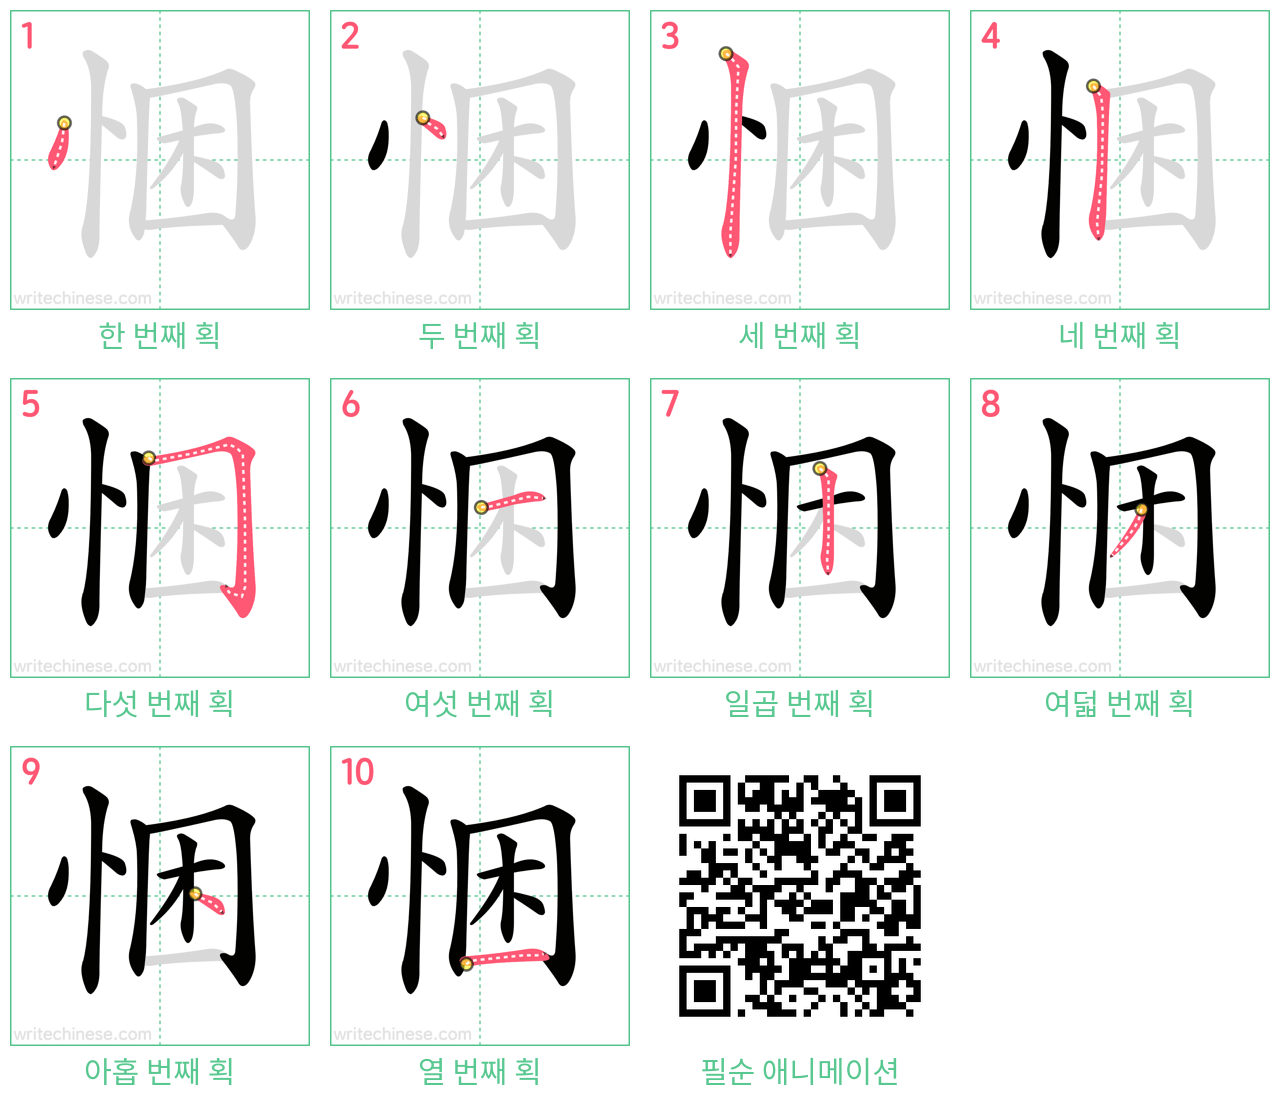 悃 step-by-step stroke order diagrams